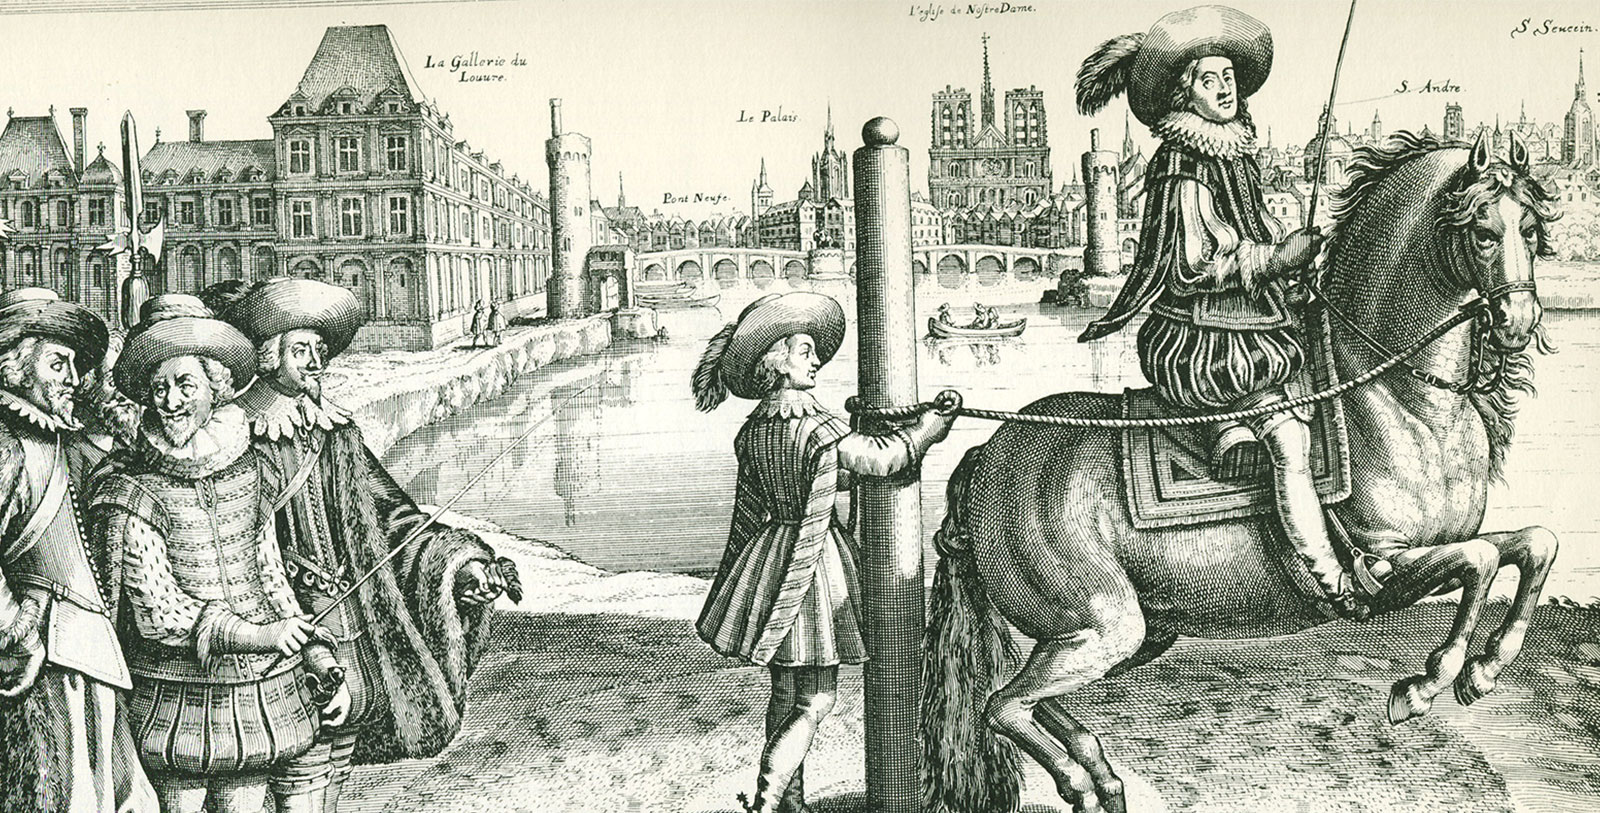 Historic engraving from L’Instruction du Roy en l’exercice de monter à cheval by Antoine de Pluvinel, Hotel Regina Louvre, Paris, France